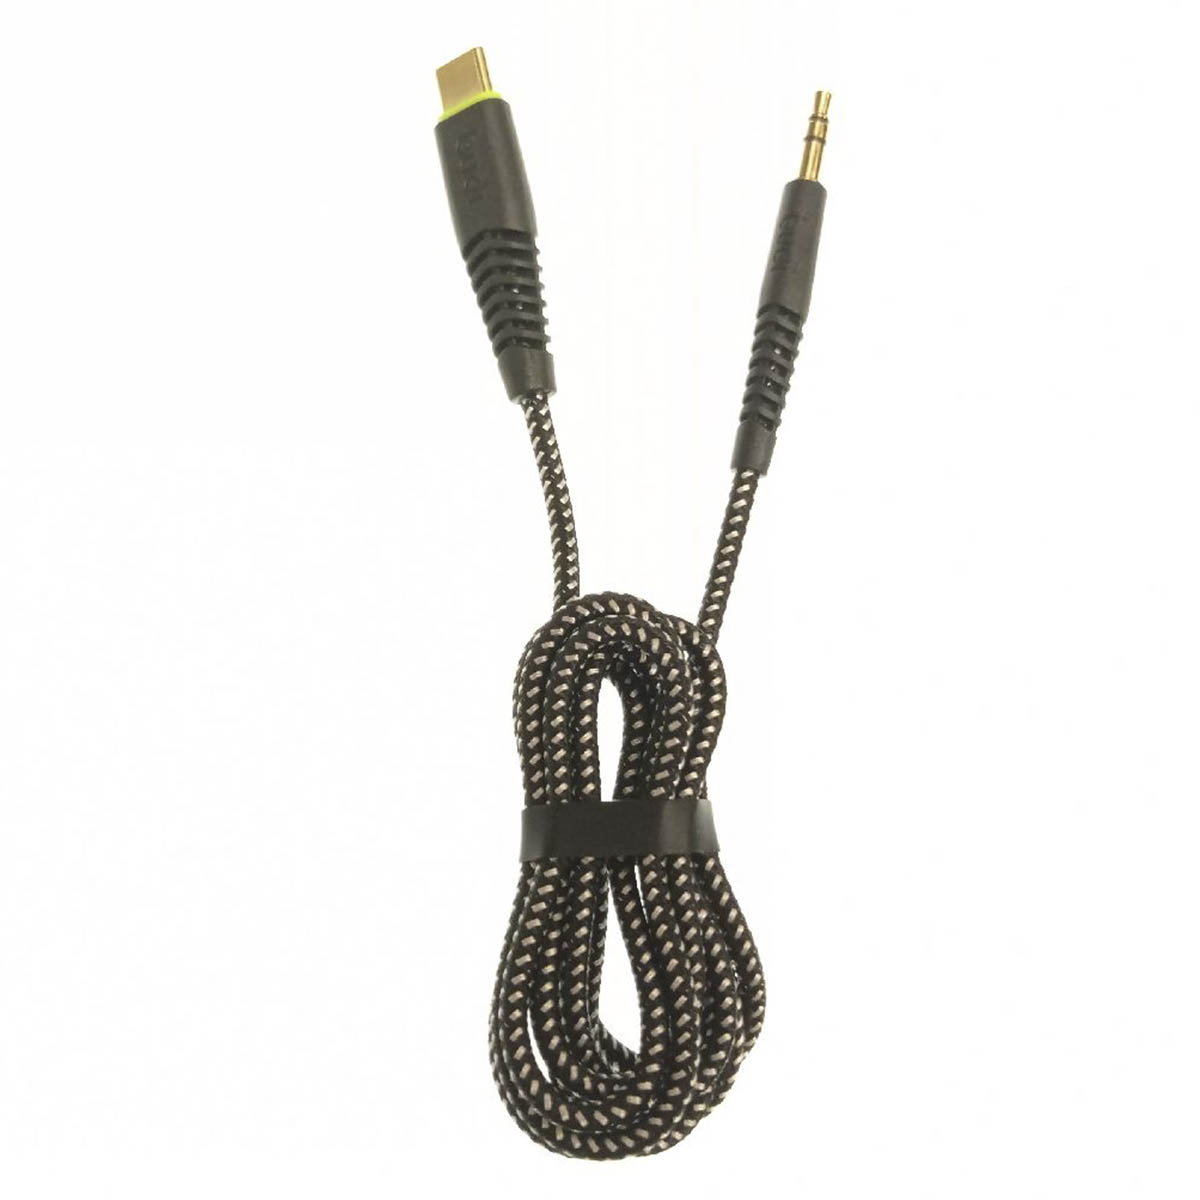 Аудио кабель, переходник BUDI Type-C на AUX Jack 3.5 mm, длина 1.2 метра, цвет черный